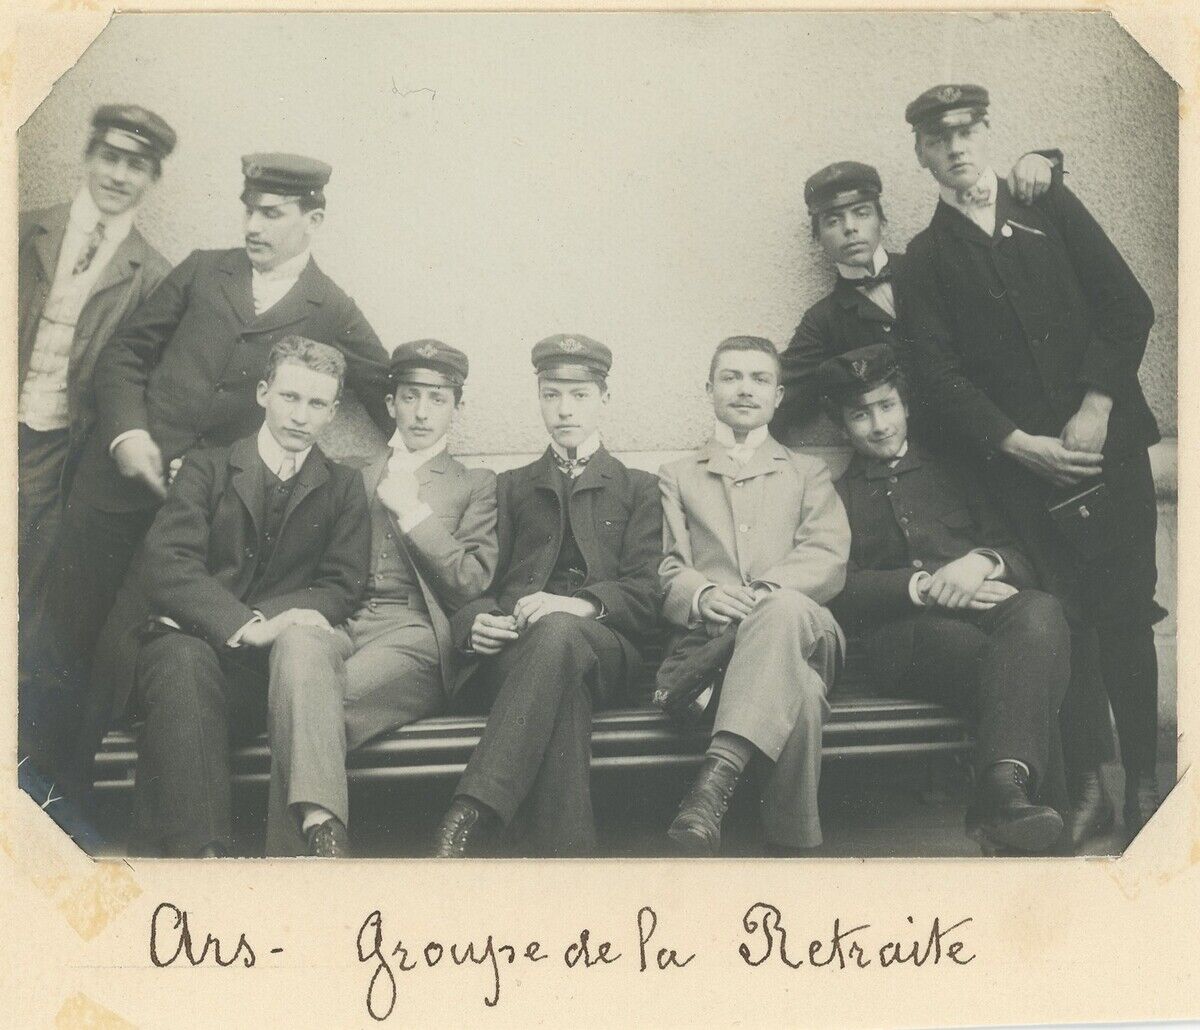 Ars-sur-Formans (Ain). Retirement Group. Schools. Schools. Circa 1900.